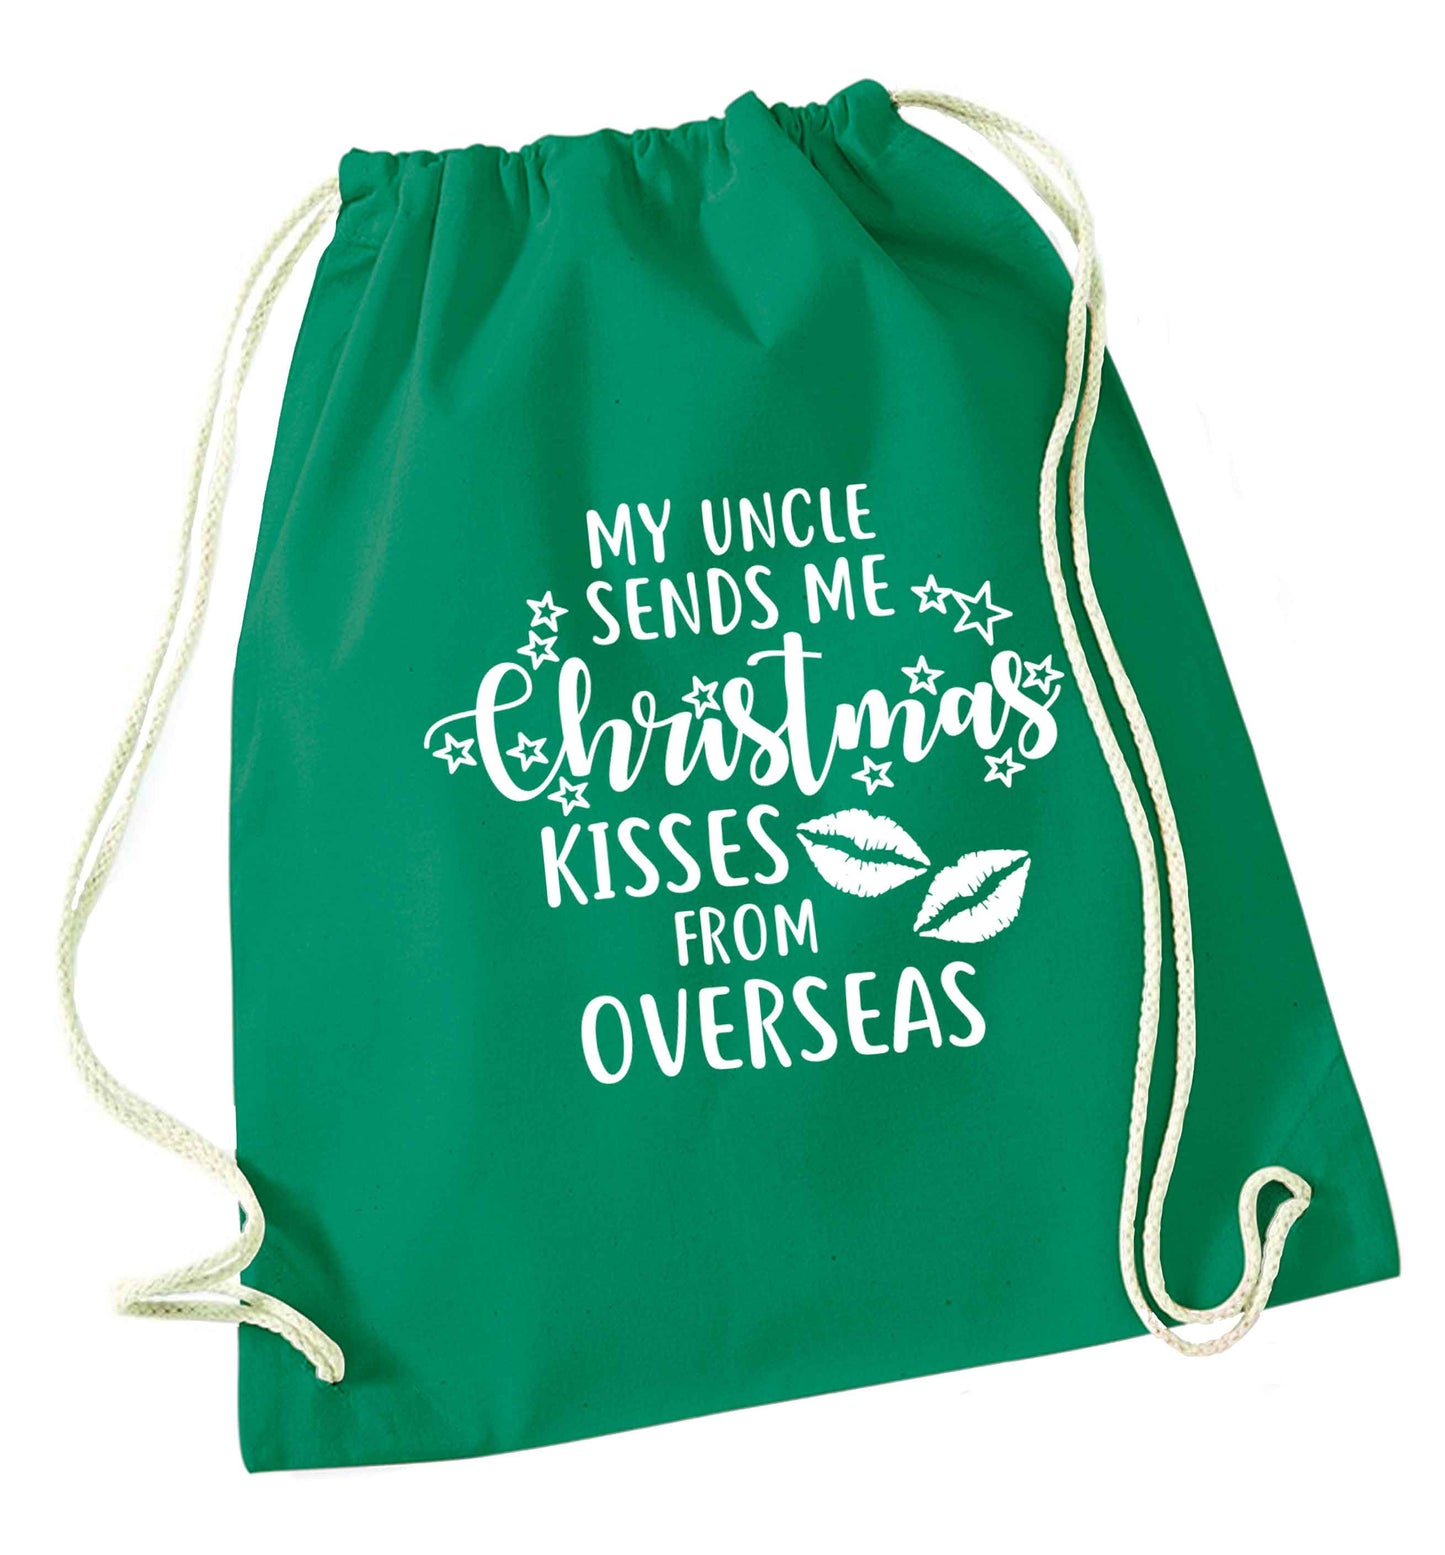 Brother Christmas Kisses Overseas green drawstring bag